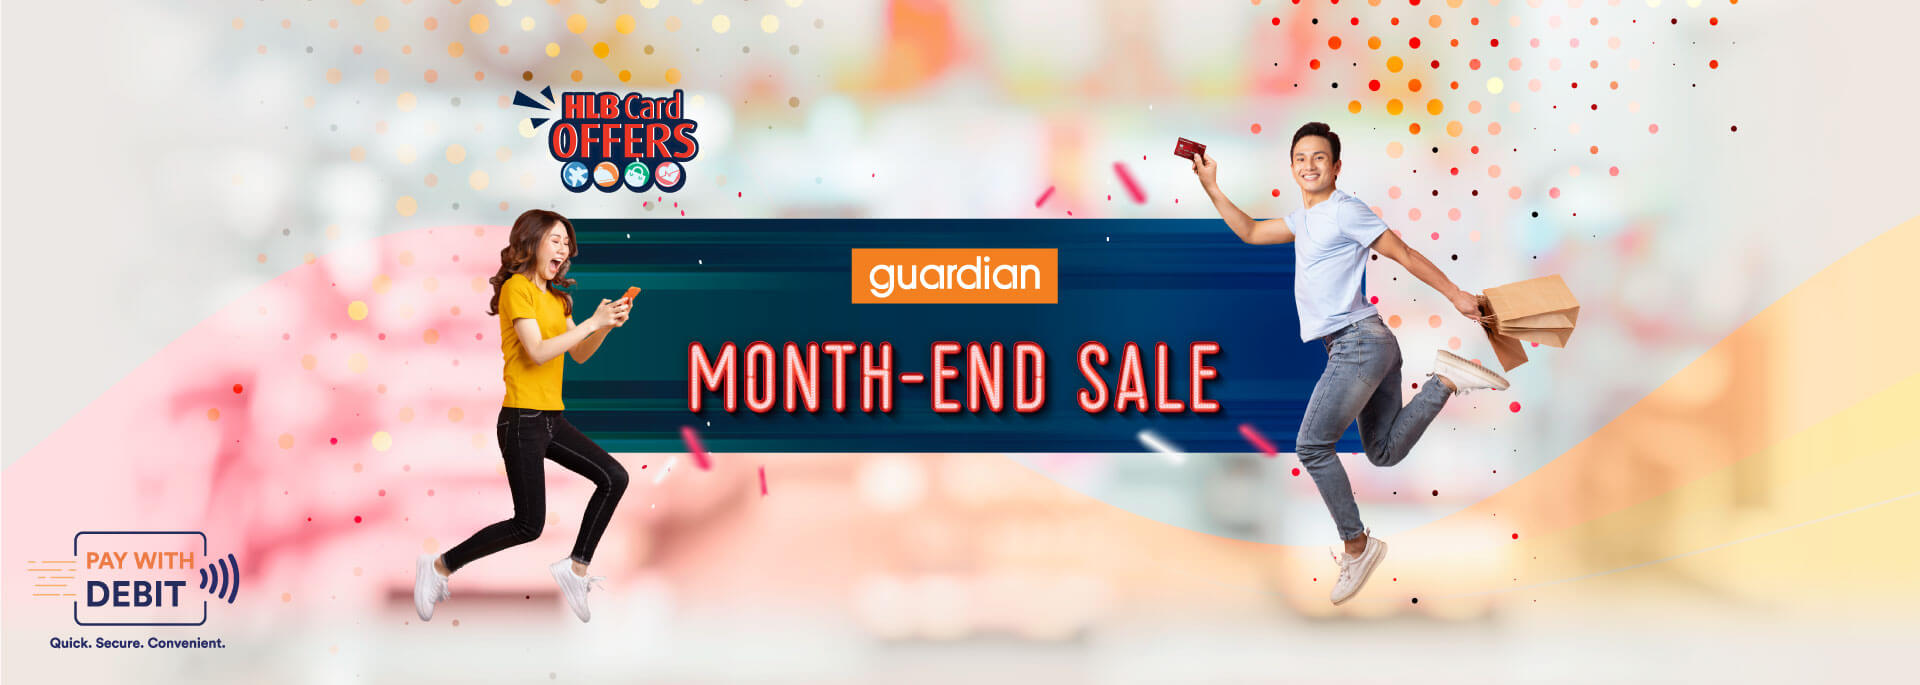 Guardian Month-end sale